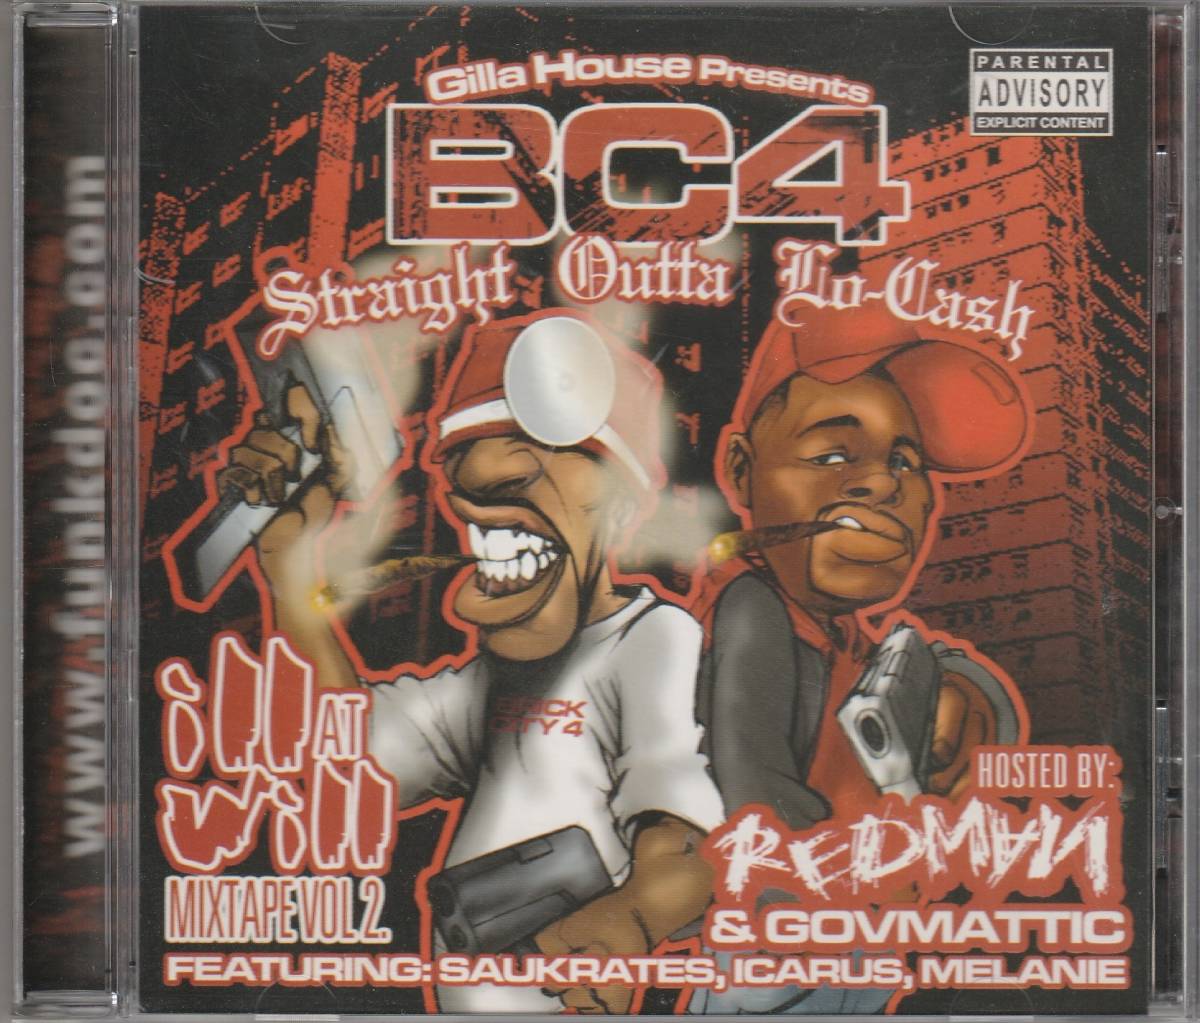 中古CD■HIPHOP■REDMAN／Ill At Will Mixtape Vol.2／2005年■Saukrates, Gov Mattic, Jay-Z, Eminem, Dr. Dre, Snoop, Fat Joe, Big Pun_画像1